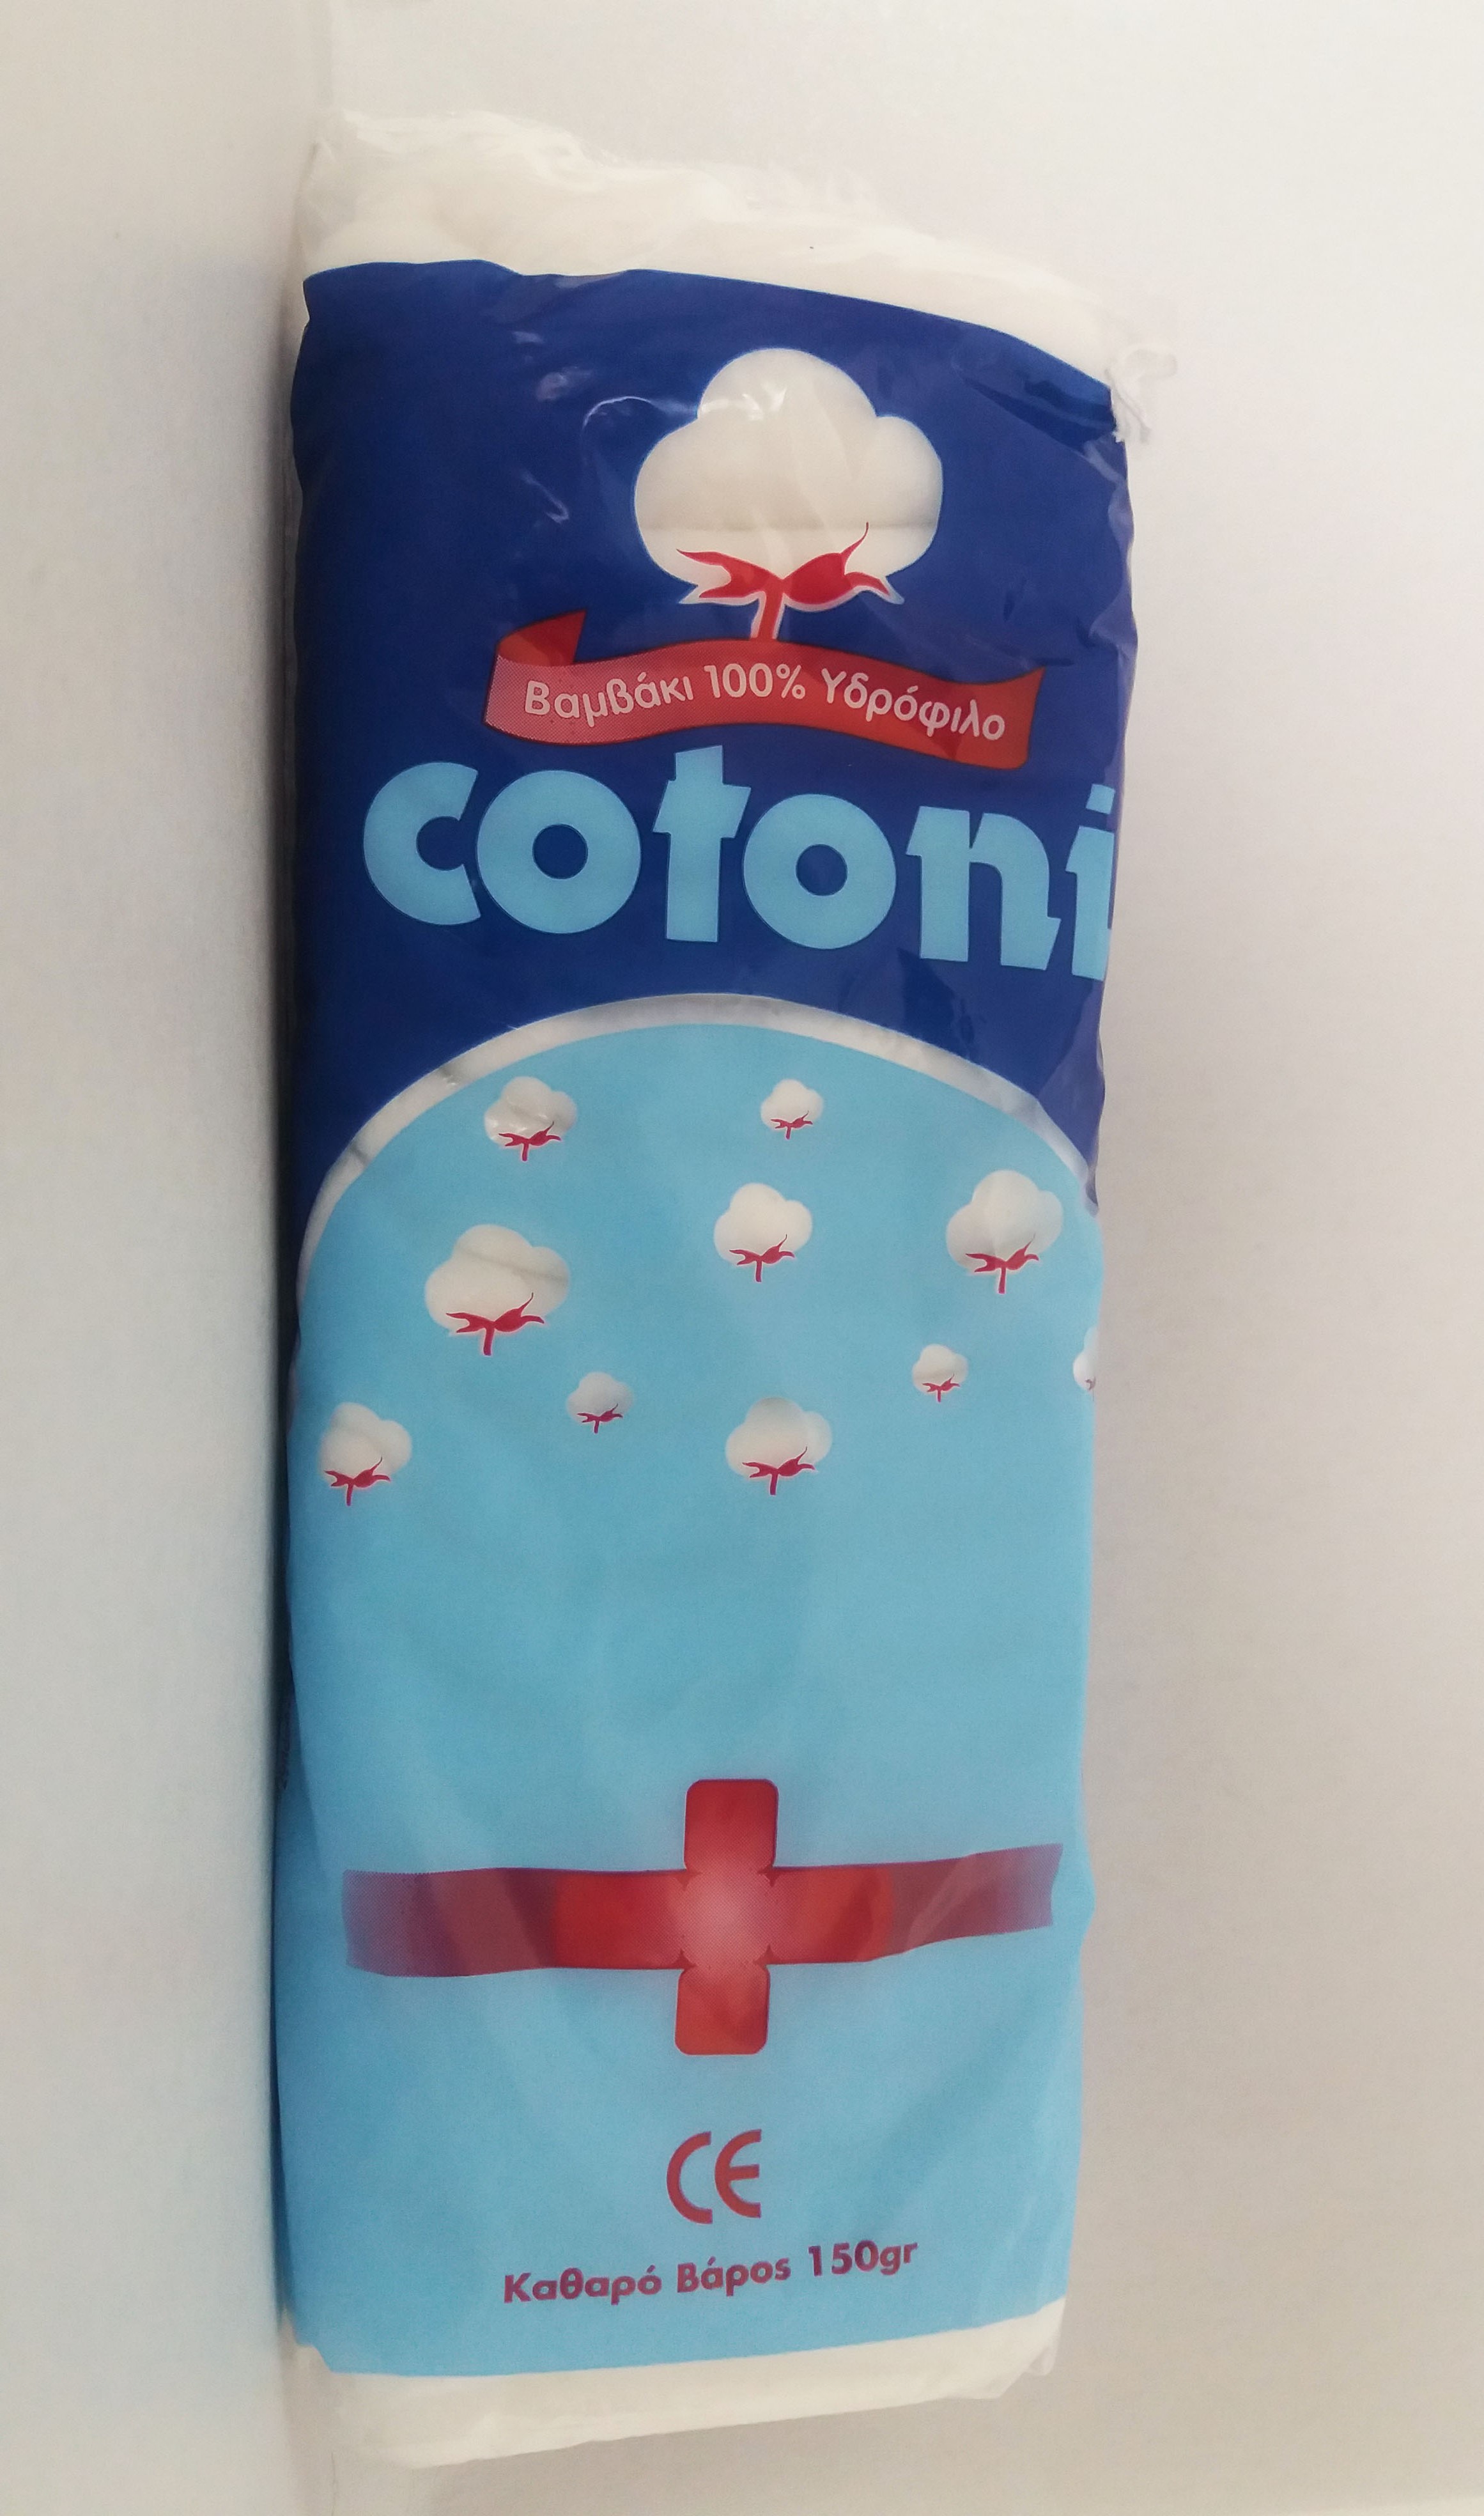 Cotton Cotoni, 150 gr